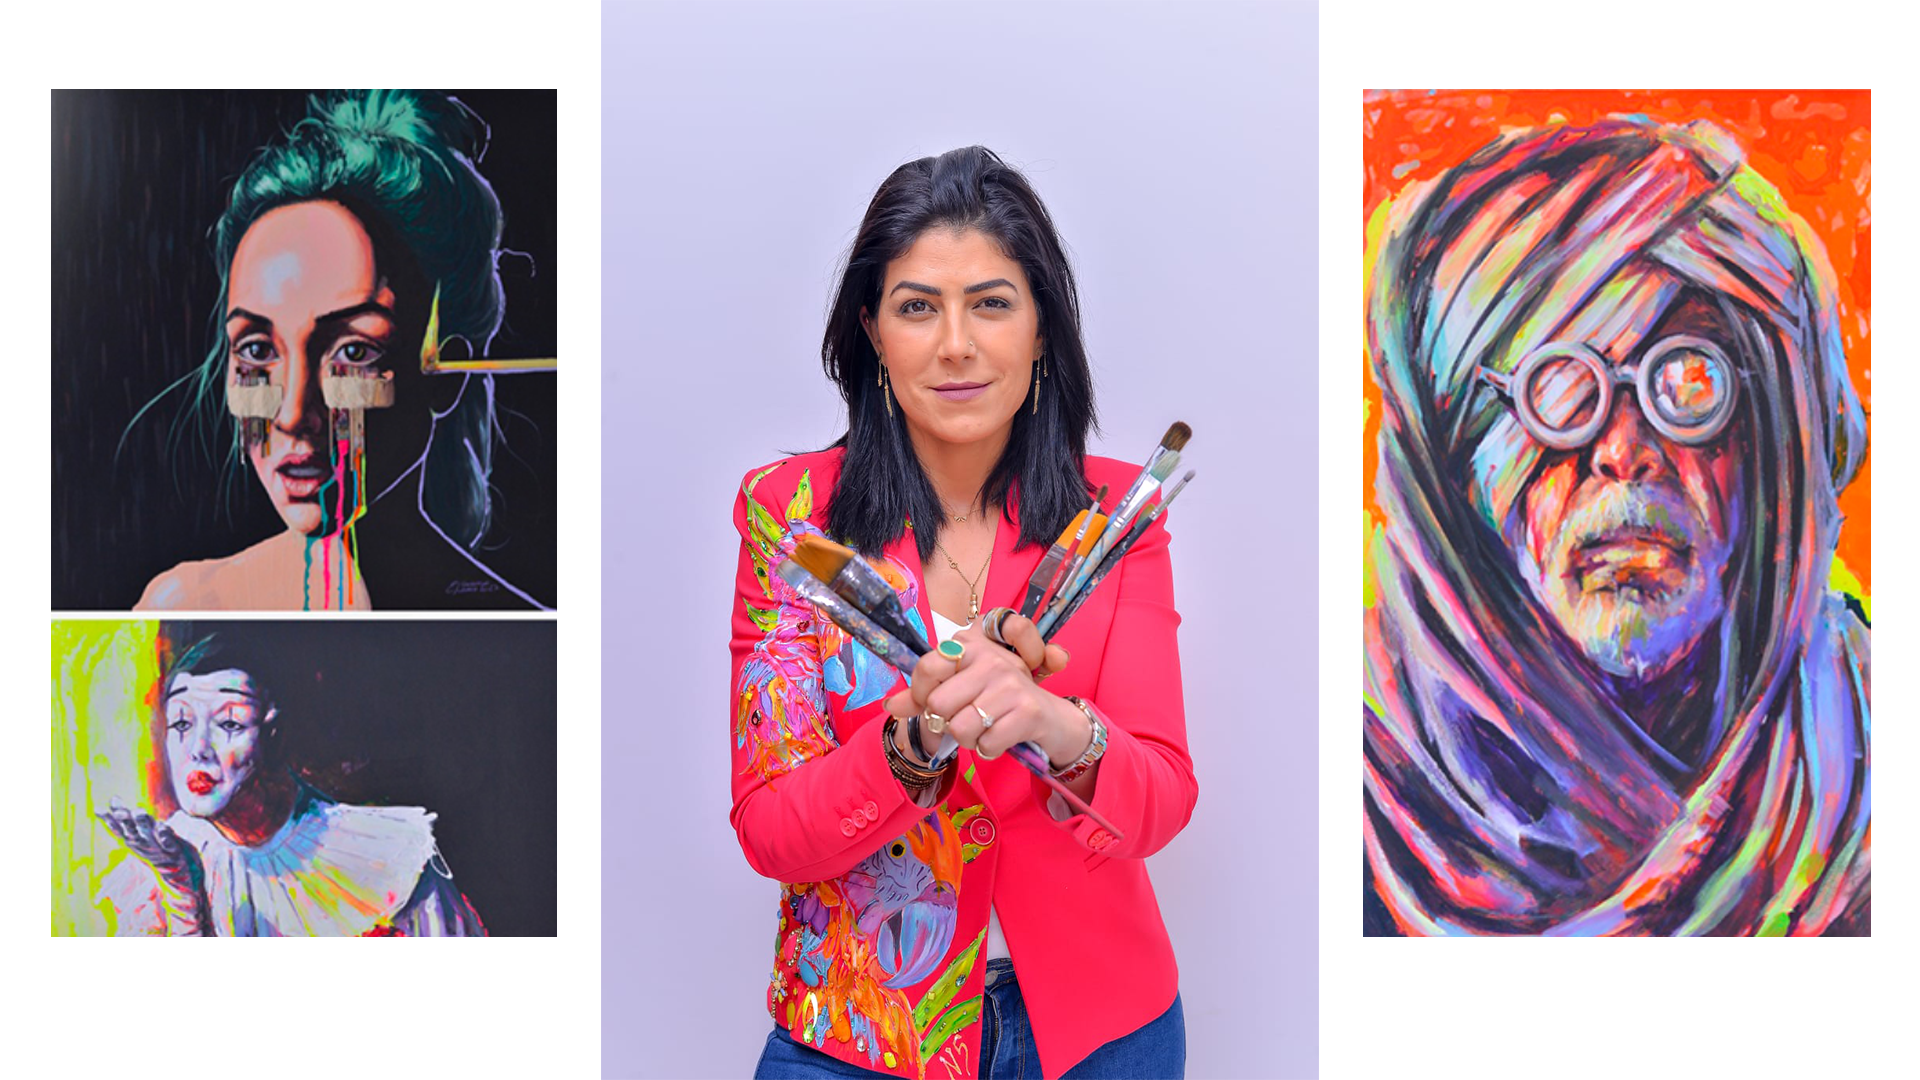 Lamia El Guermaï expose à ARTEM Gallery :  La passion de l’équilibre des couleurs au-delà des sens